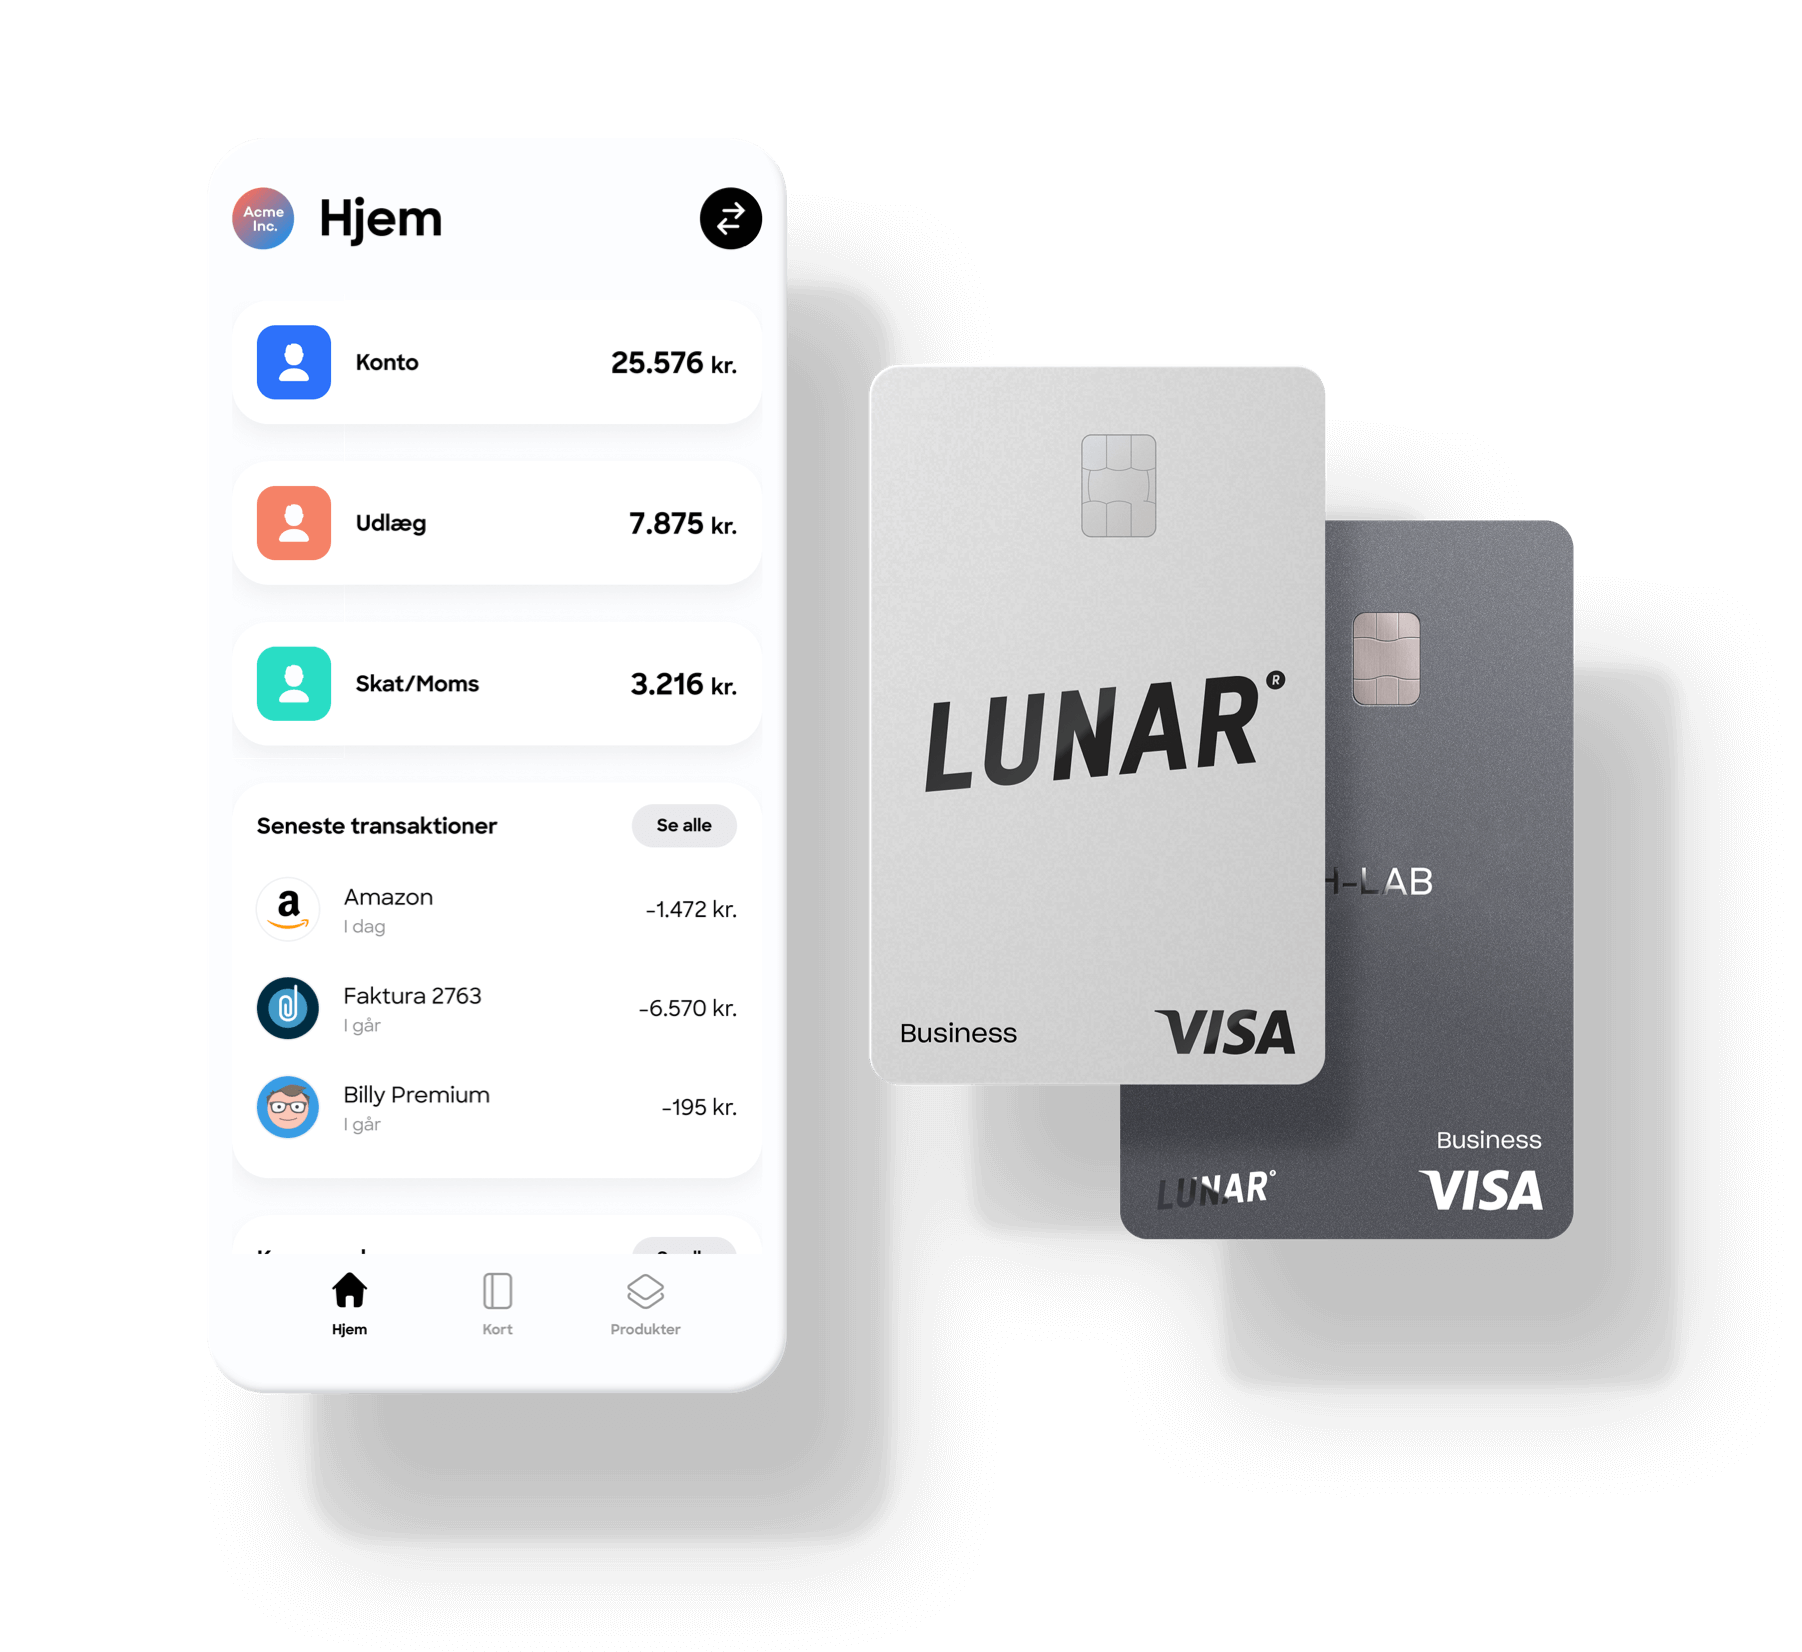 Lunar Business er en moderne bank skræddersyet til dig, der er iværksætter. Styr hele din økonomi fra mobilen, minimér rutinearbejde, og voks hurtigere.